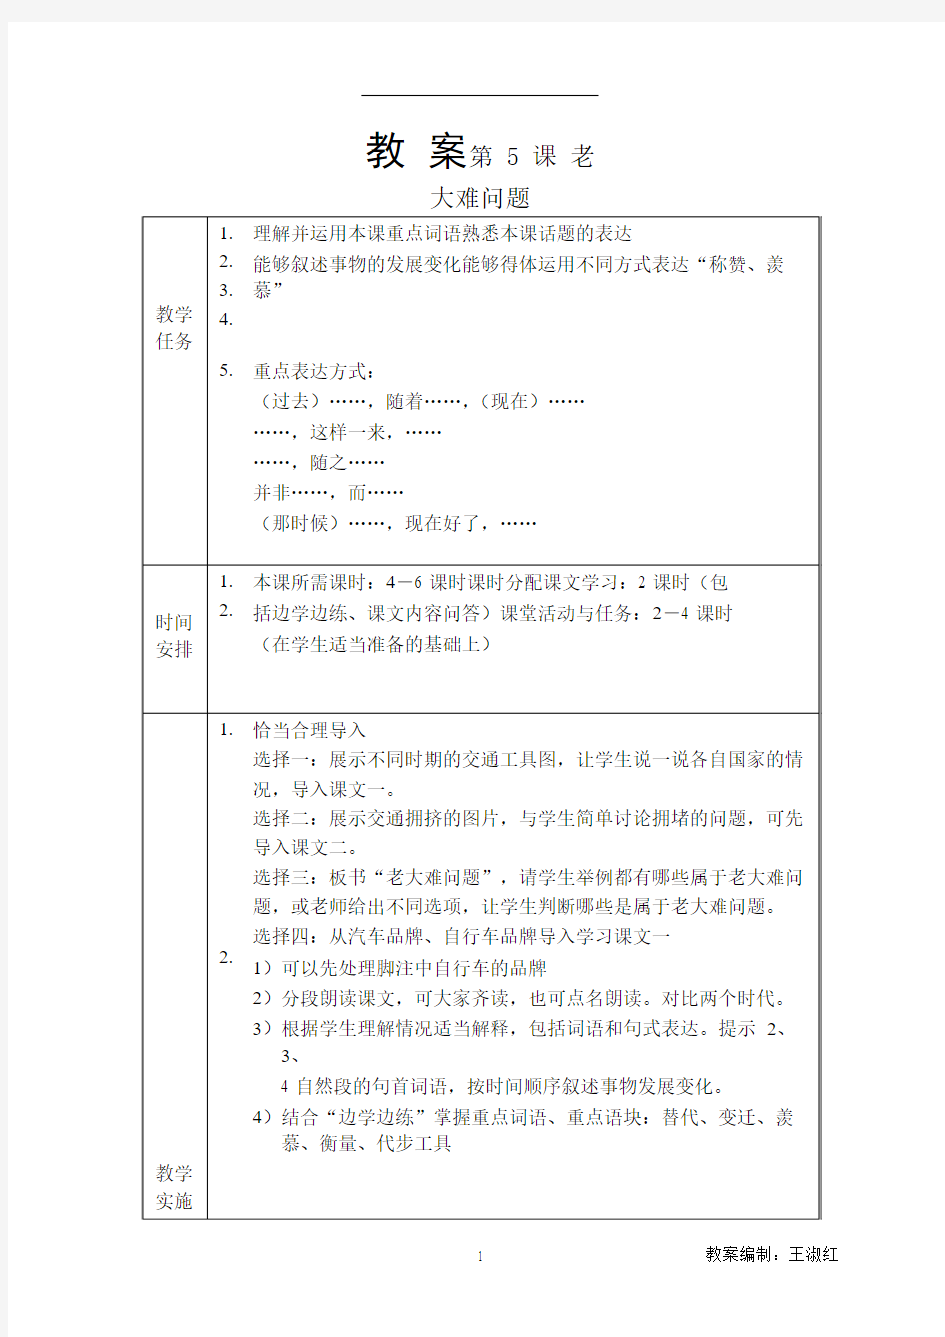 发展汉语(第二版)高级口语Ⅰ-5教案5第五课 老大难问题